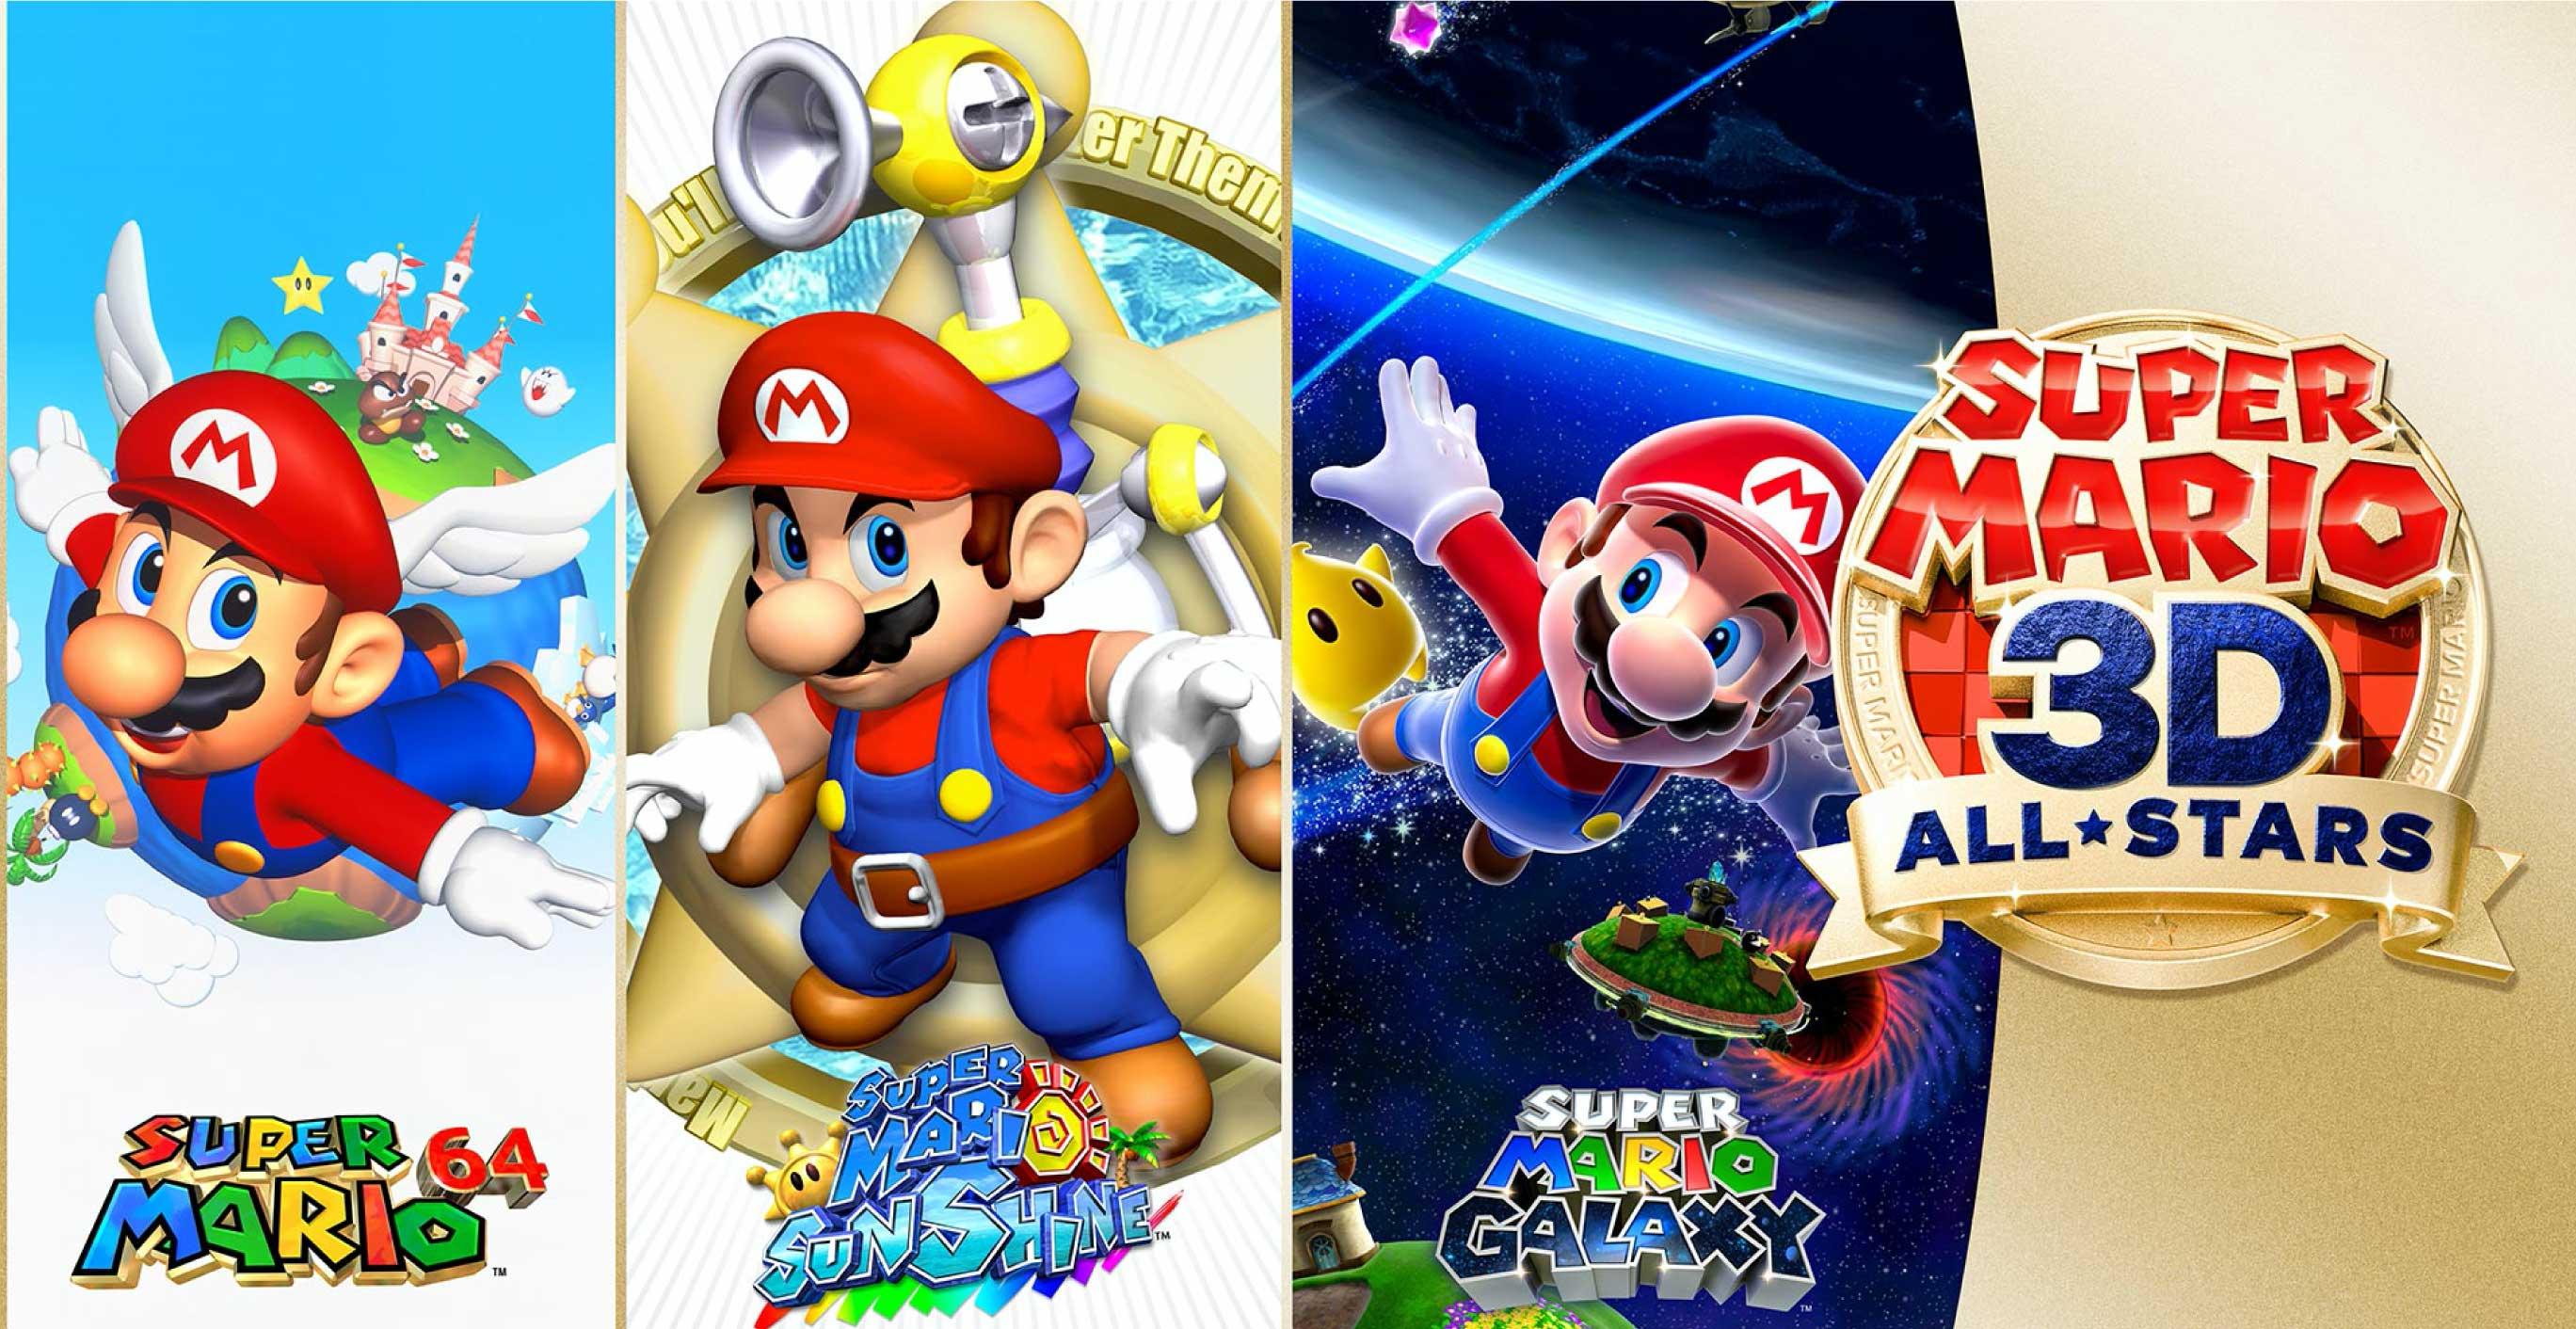 Super Mario™ 3D All-Stars